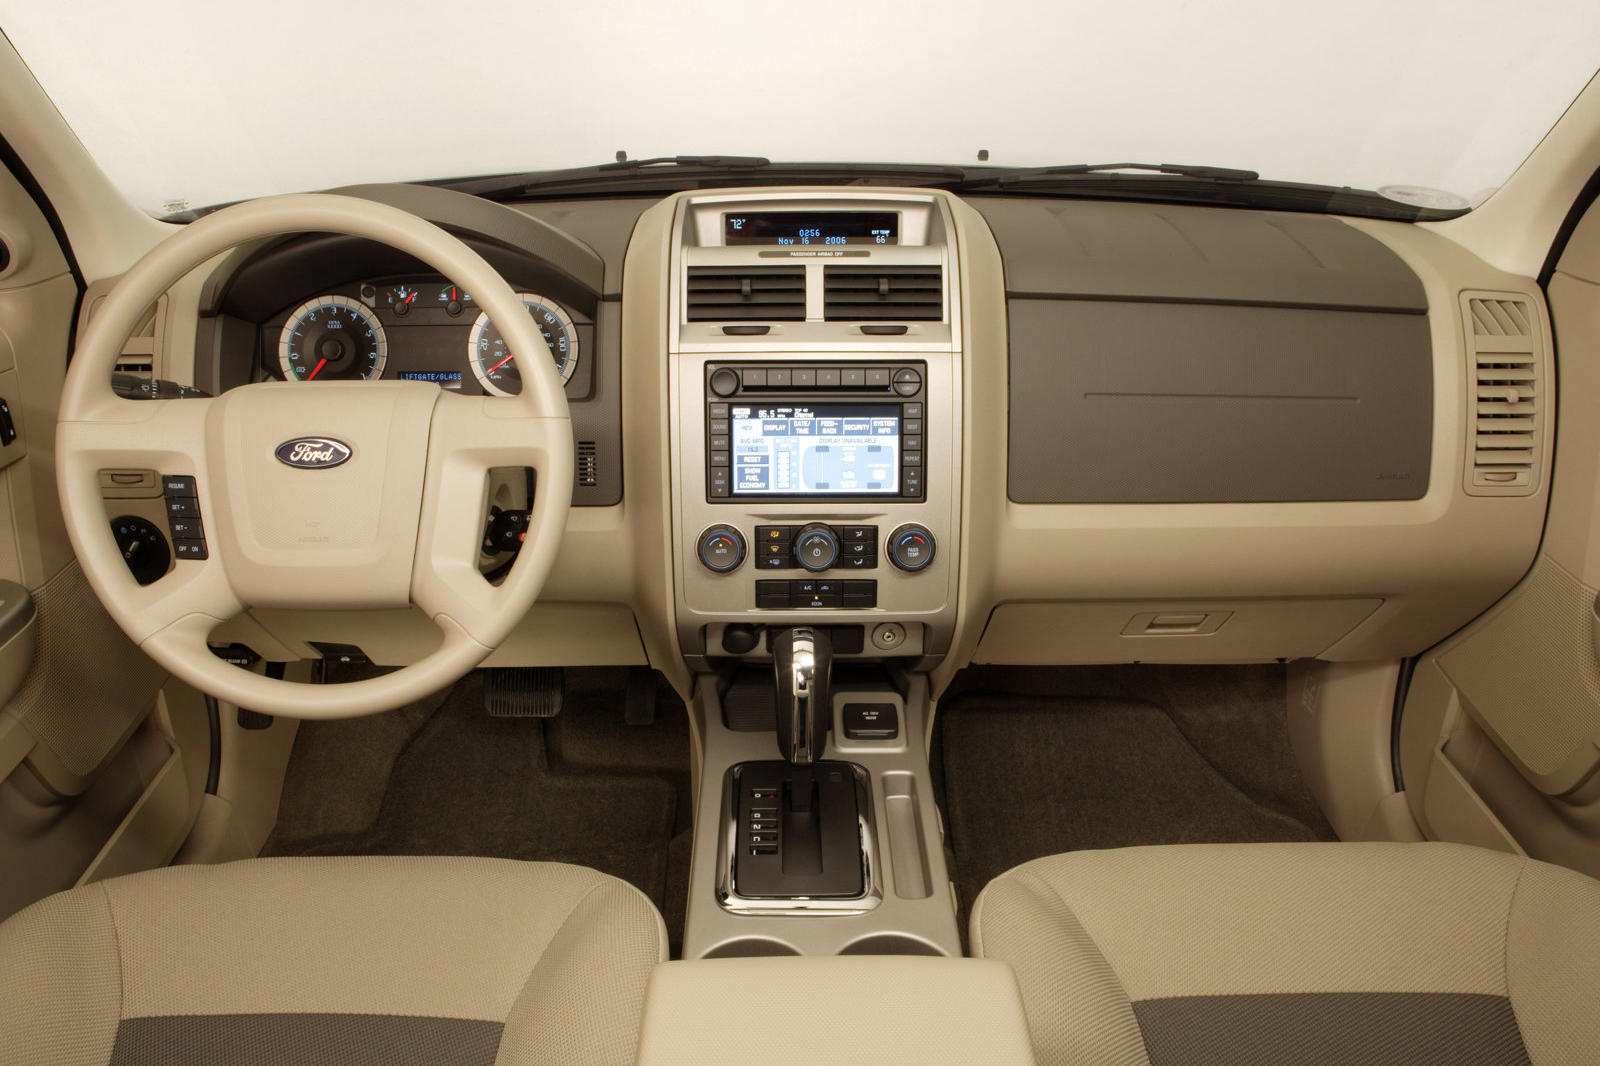 2012 Ford Escape Interior Photos | CarBuzz